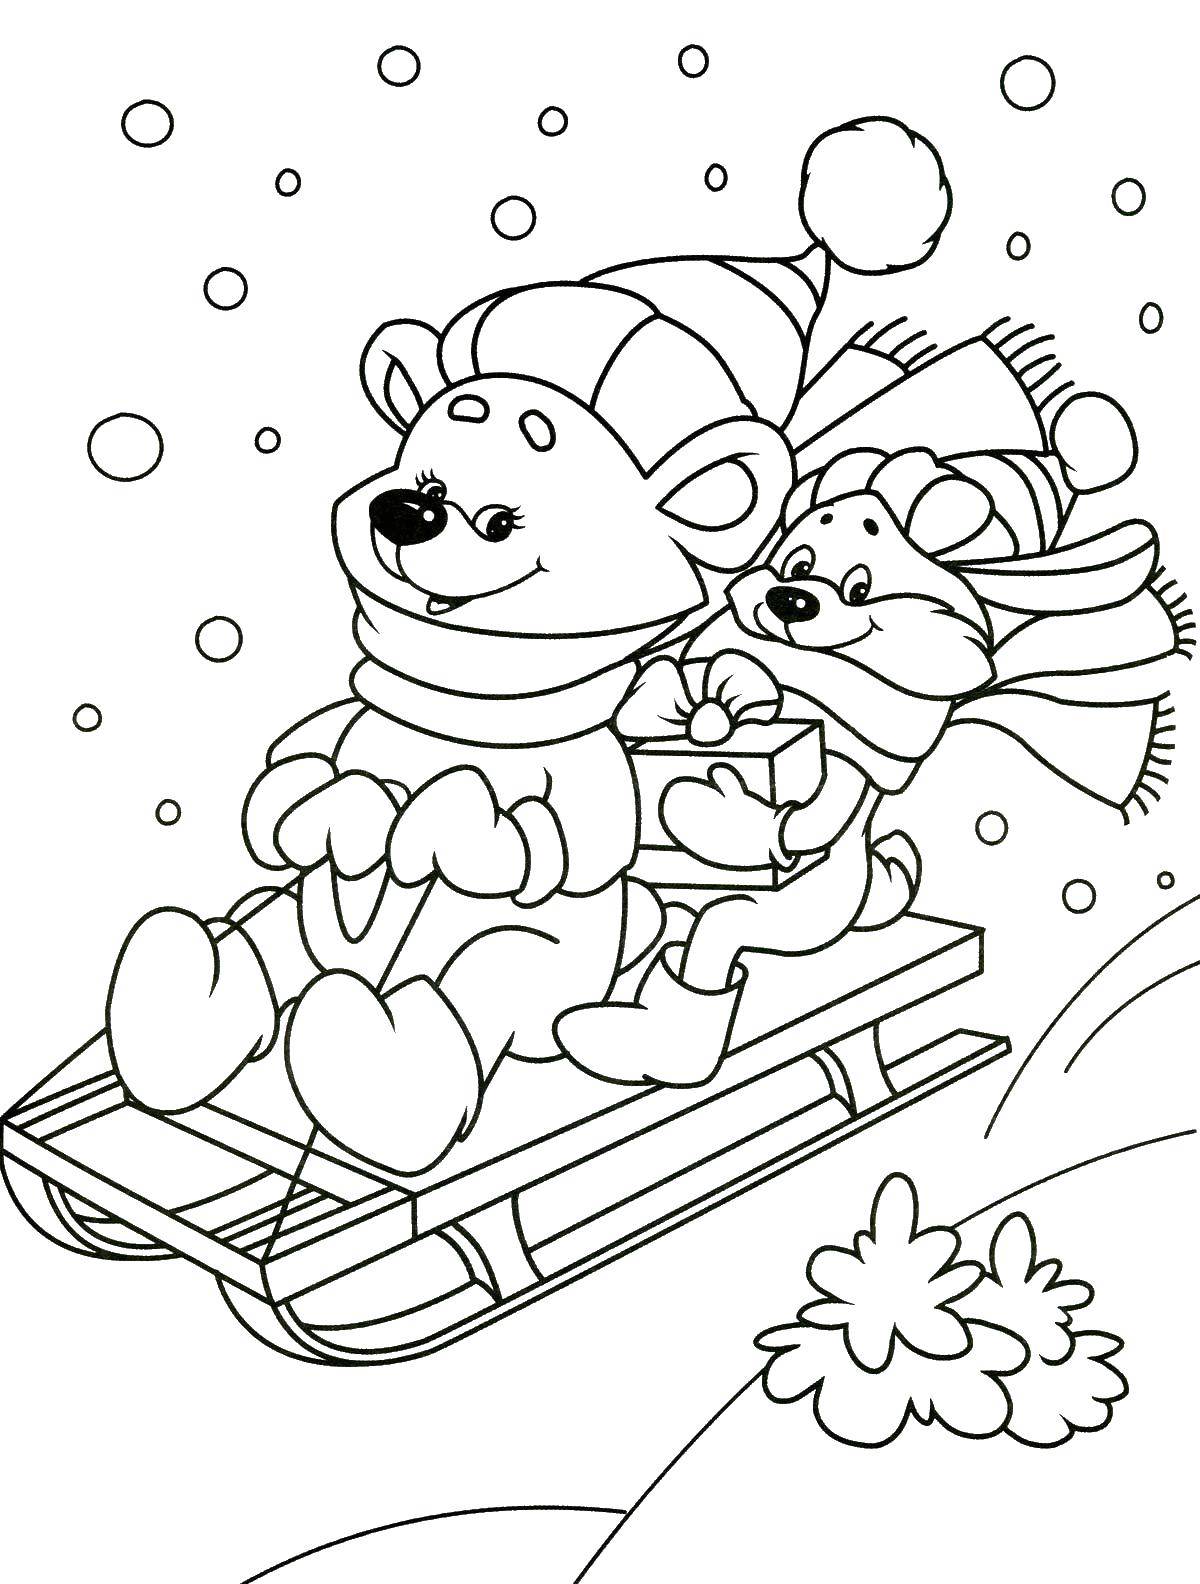 Раскраски для детей Зима, зимушка раскраски для школьников  Мишки катаются на санках